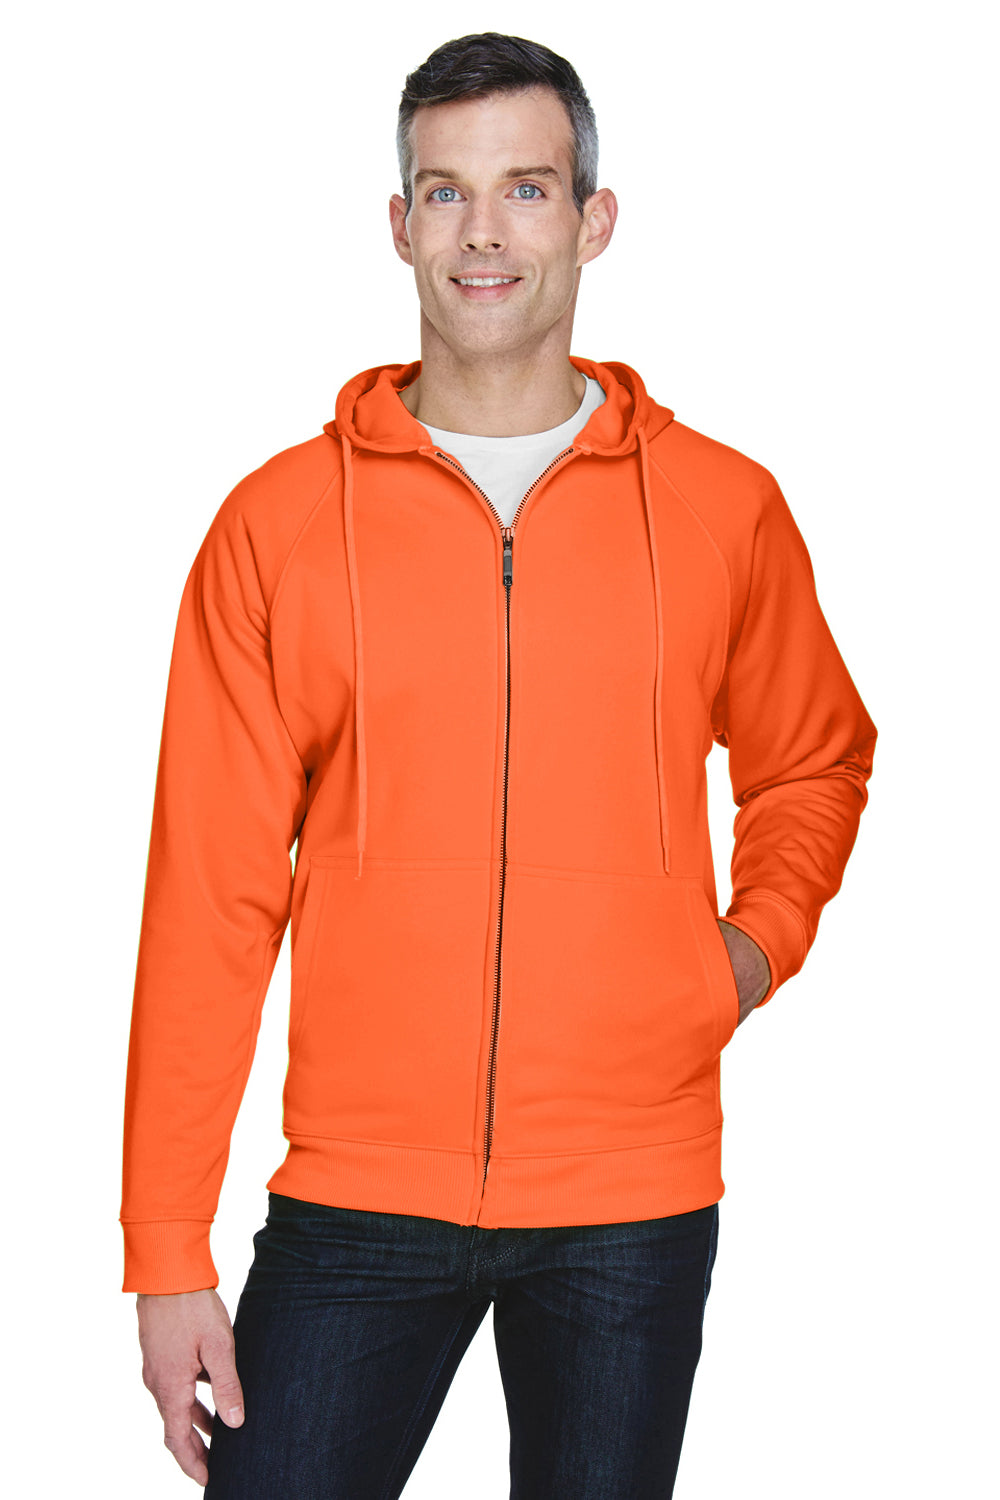 UltraClub 8463 Mens Rugged Wear Water Resistant Fleece Full Zip Hooded Sweatshirt Hoodie Bright Orange Front